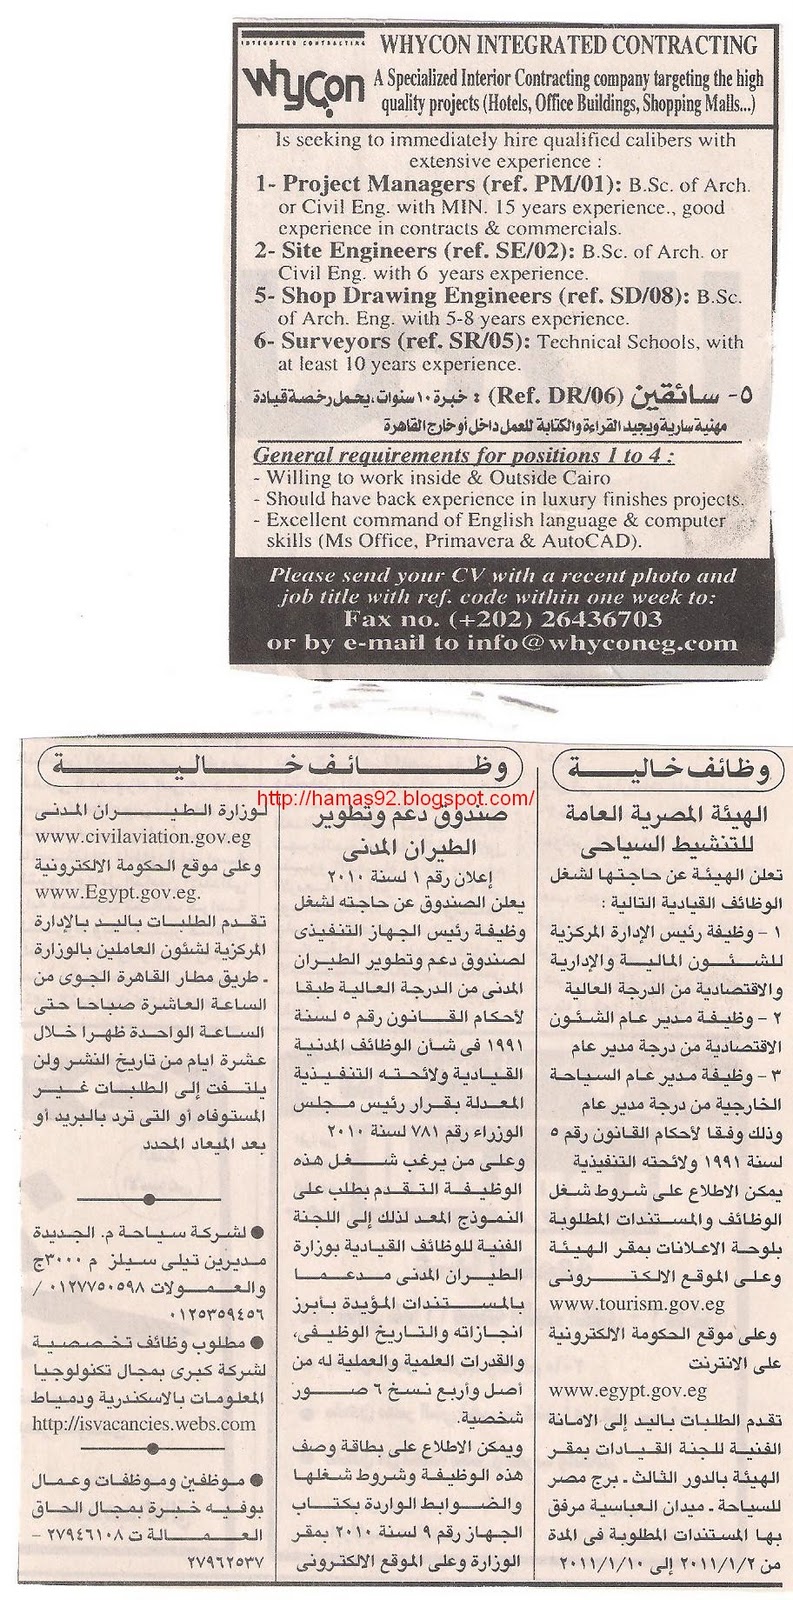 وظائف خاليه: وظائف خاليه من جريده الاهرام - الخميس 30 ديسمبر 2010 Picture+003